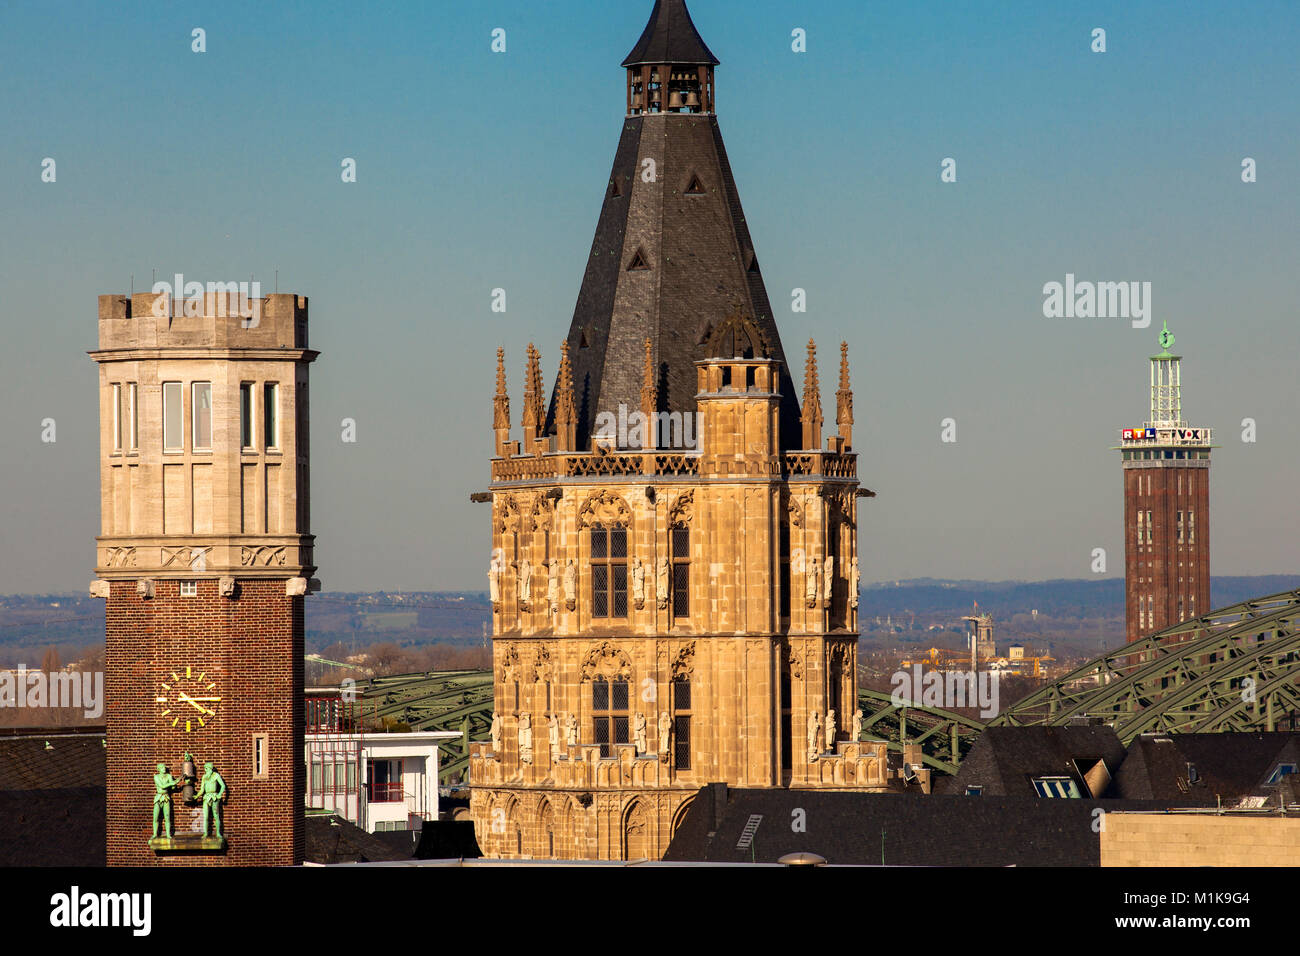 Deutschland, Köln, Turm des Gebäudes Haus Neuerburg in der historischen Altstadt, der Turm der historischen Rathaus, im Hintergrund der alte Turm der t Stockfoto